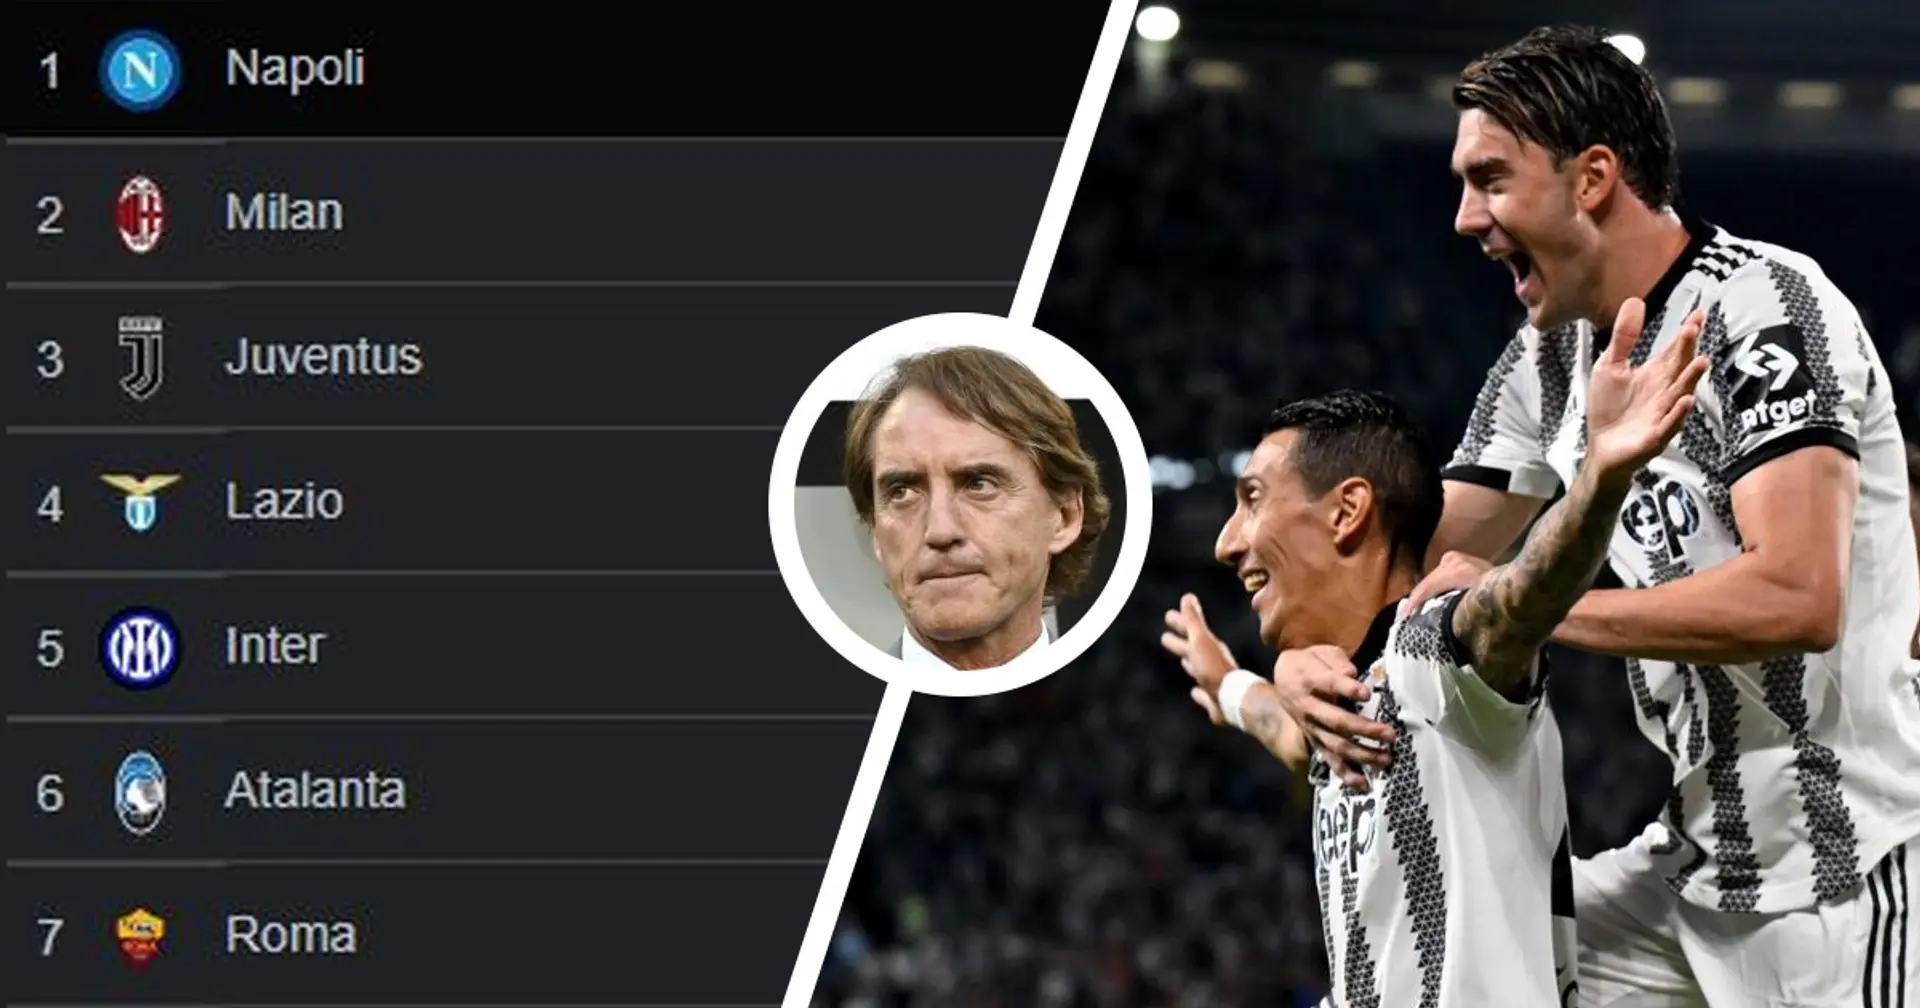 "Inter? La rivale": l'ex tecnico nerazzurro Mancini snobba la Juve nella rincorsa al Napoli, la classifica dice altro